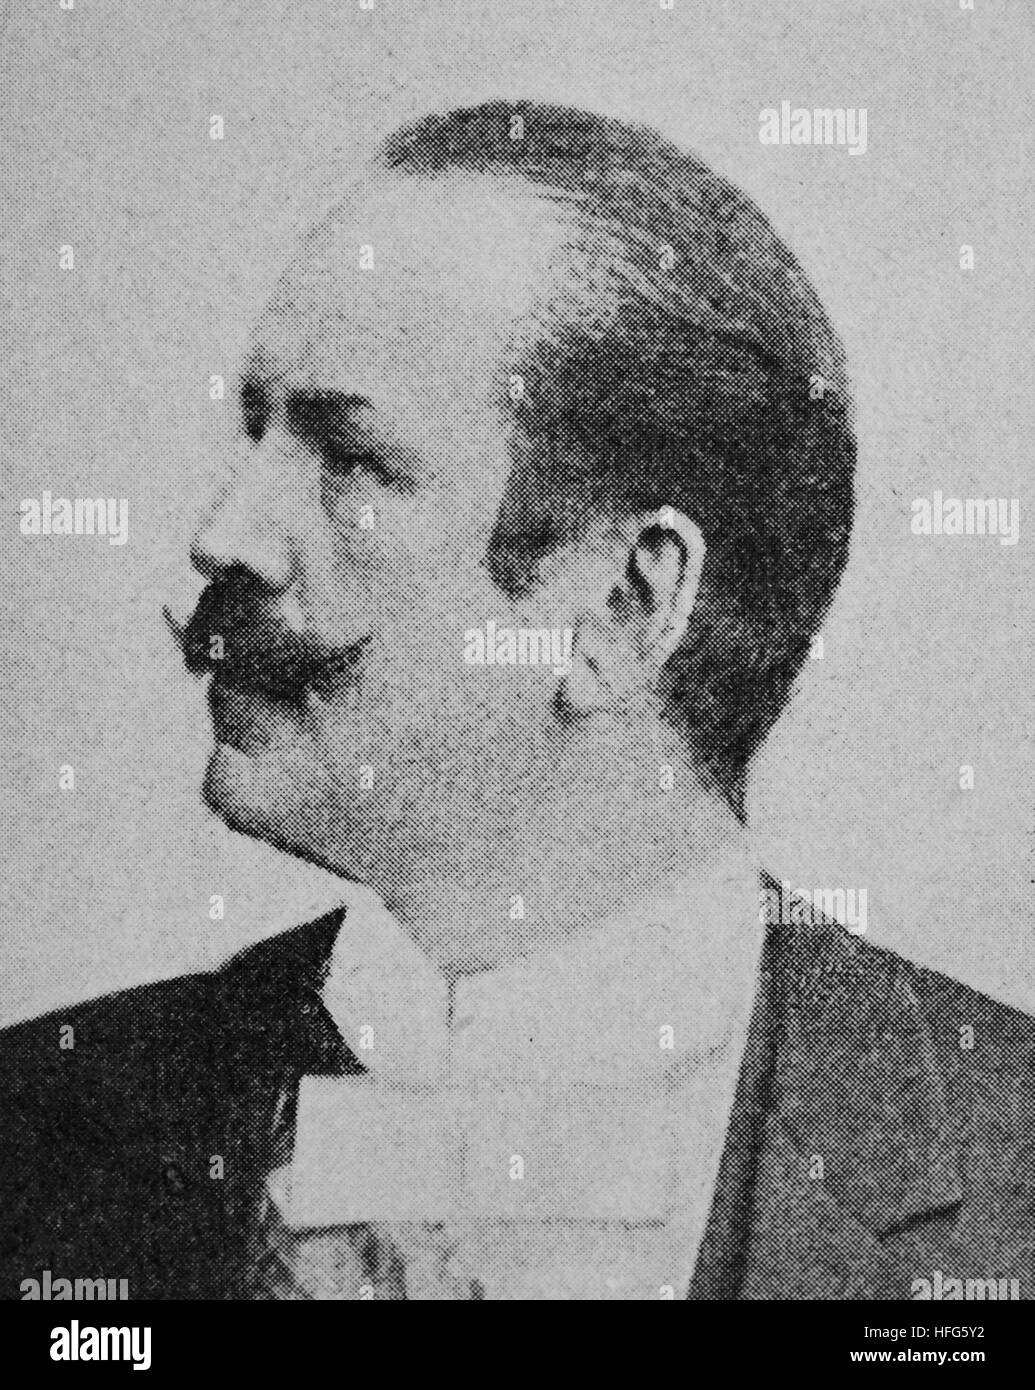 Karl Sonntag oder Carl Sontag oder Karl Holm, 1828 ?1900 - était un acteur, dramaturge et écrivain, reproduction photo de l'année 1895, l'amélioration numérique Banque D'Images